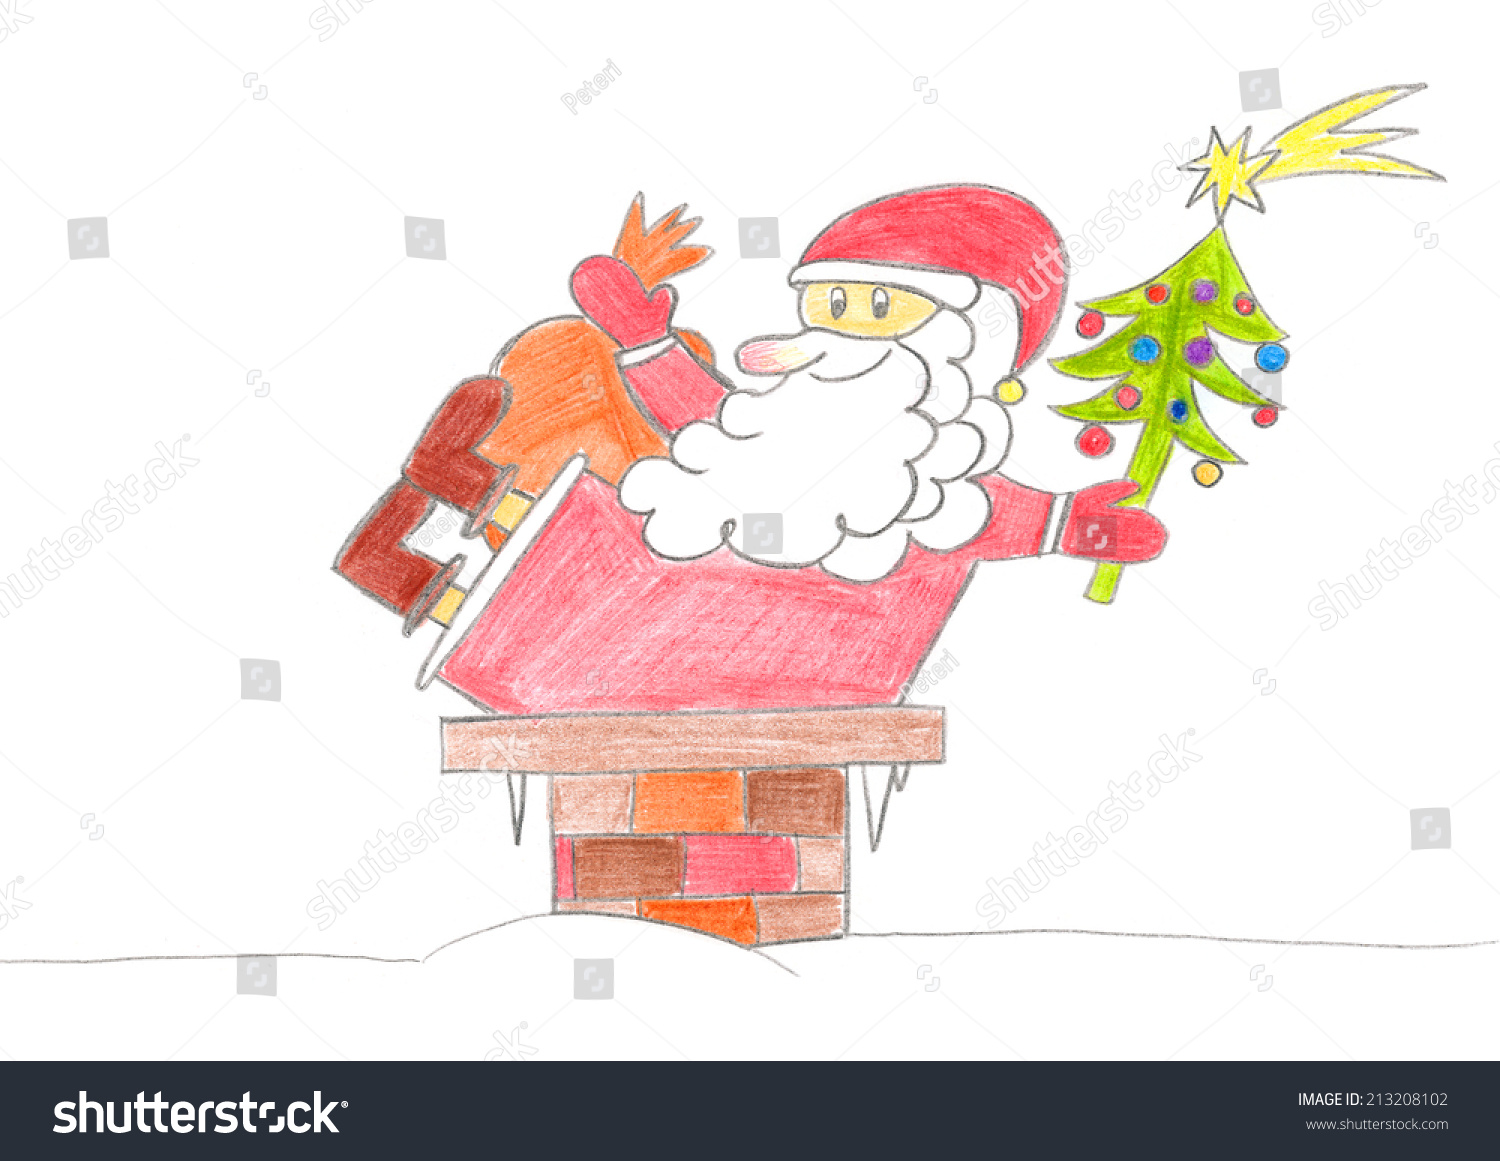 クリスマスの夜に煙突に落ちるサンタクロースの子供の絵 のイラスト素材